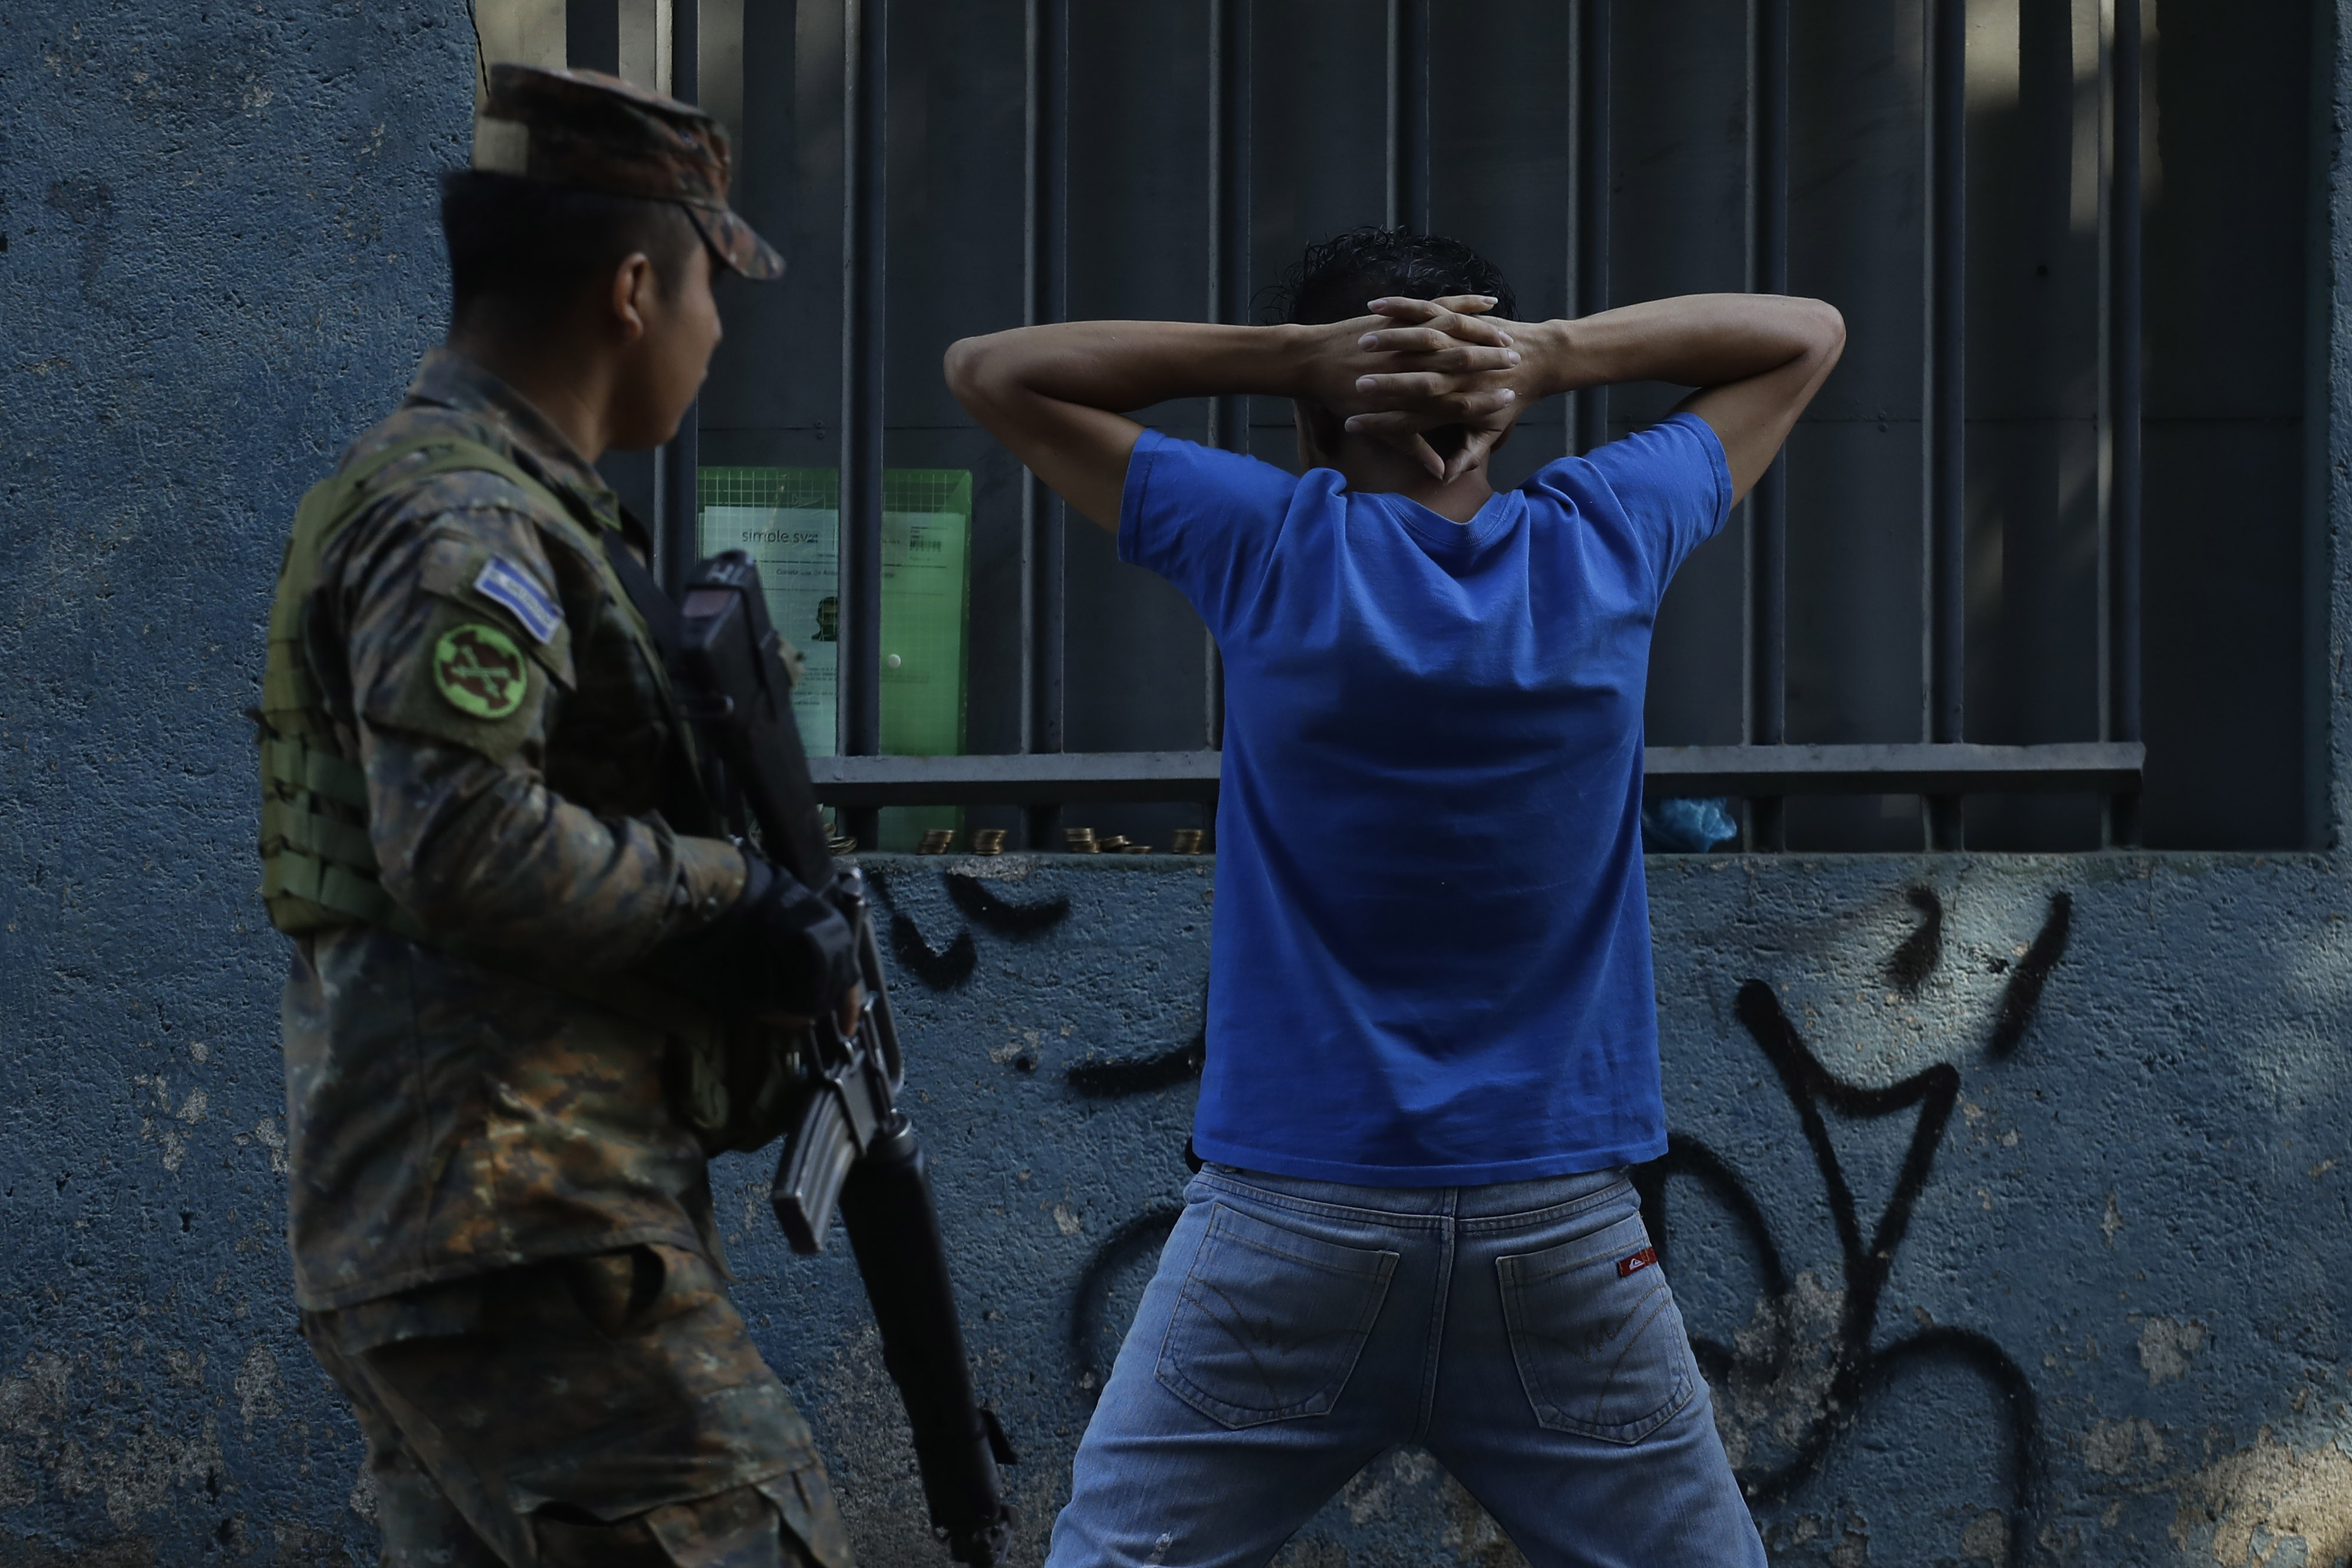 Desde el año pasado las fuerzas de seguridad han detectado como pandilleros de El Salvador buscan evadir a la justicia de su país, trasladándose a Guatemala para continuar delinquiendo. EFE/ Rodrigo Sura